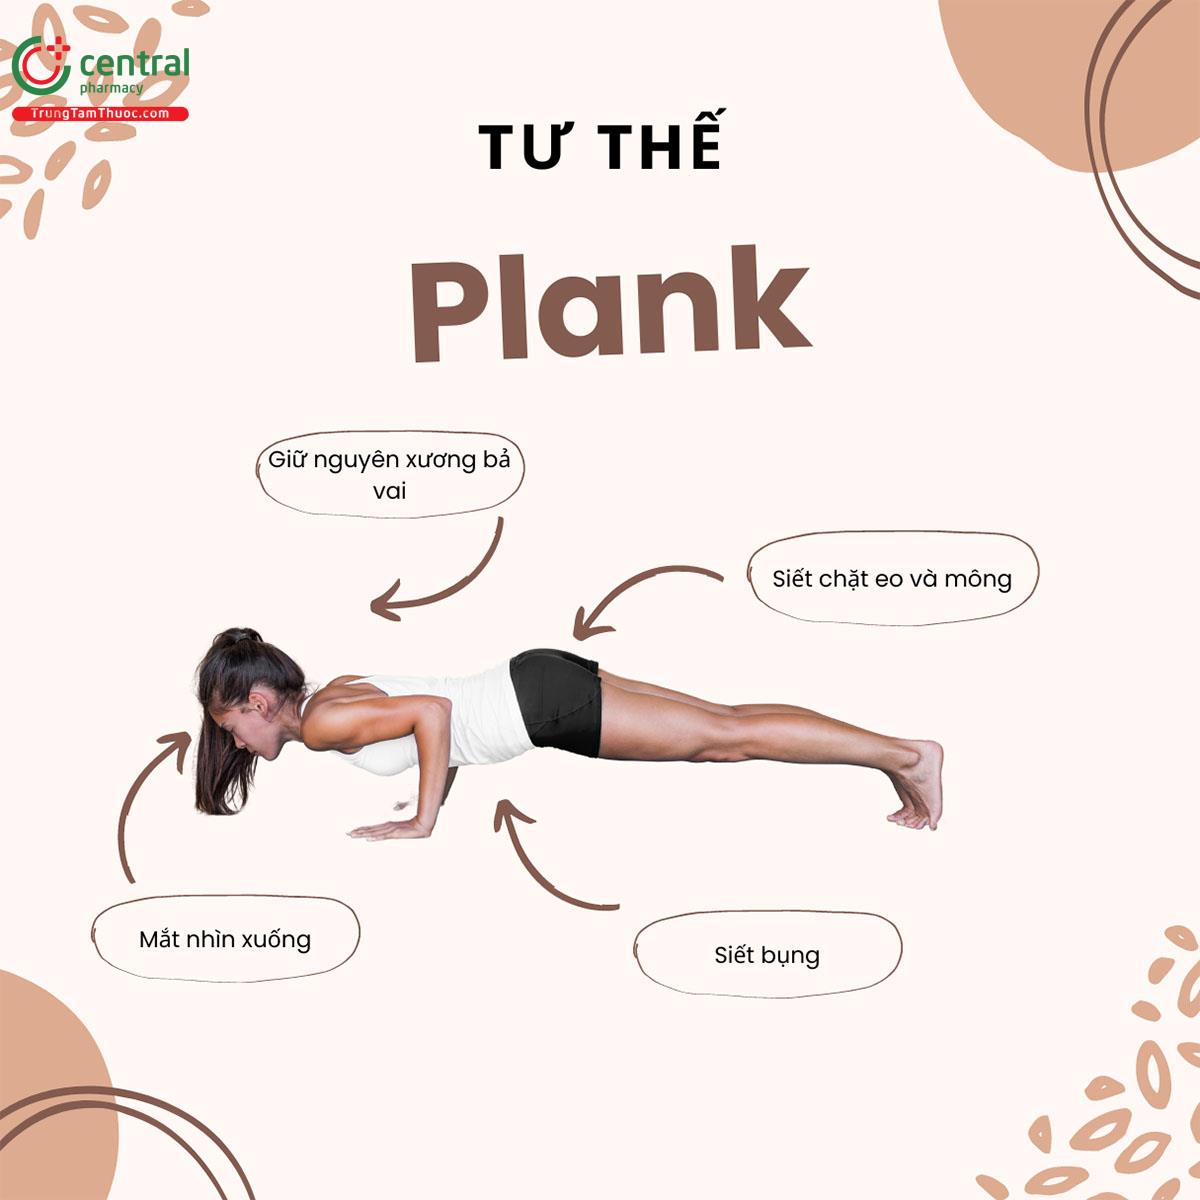 Tư thế Plank giúp giảm mỡ bụng hiệu quả